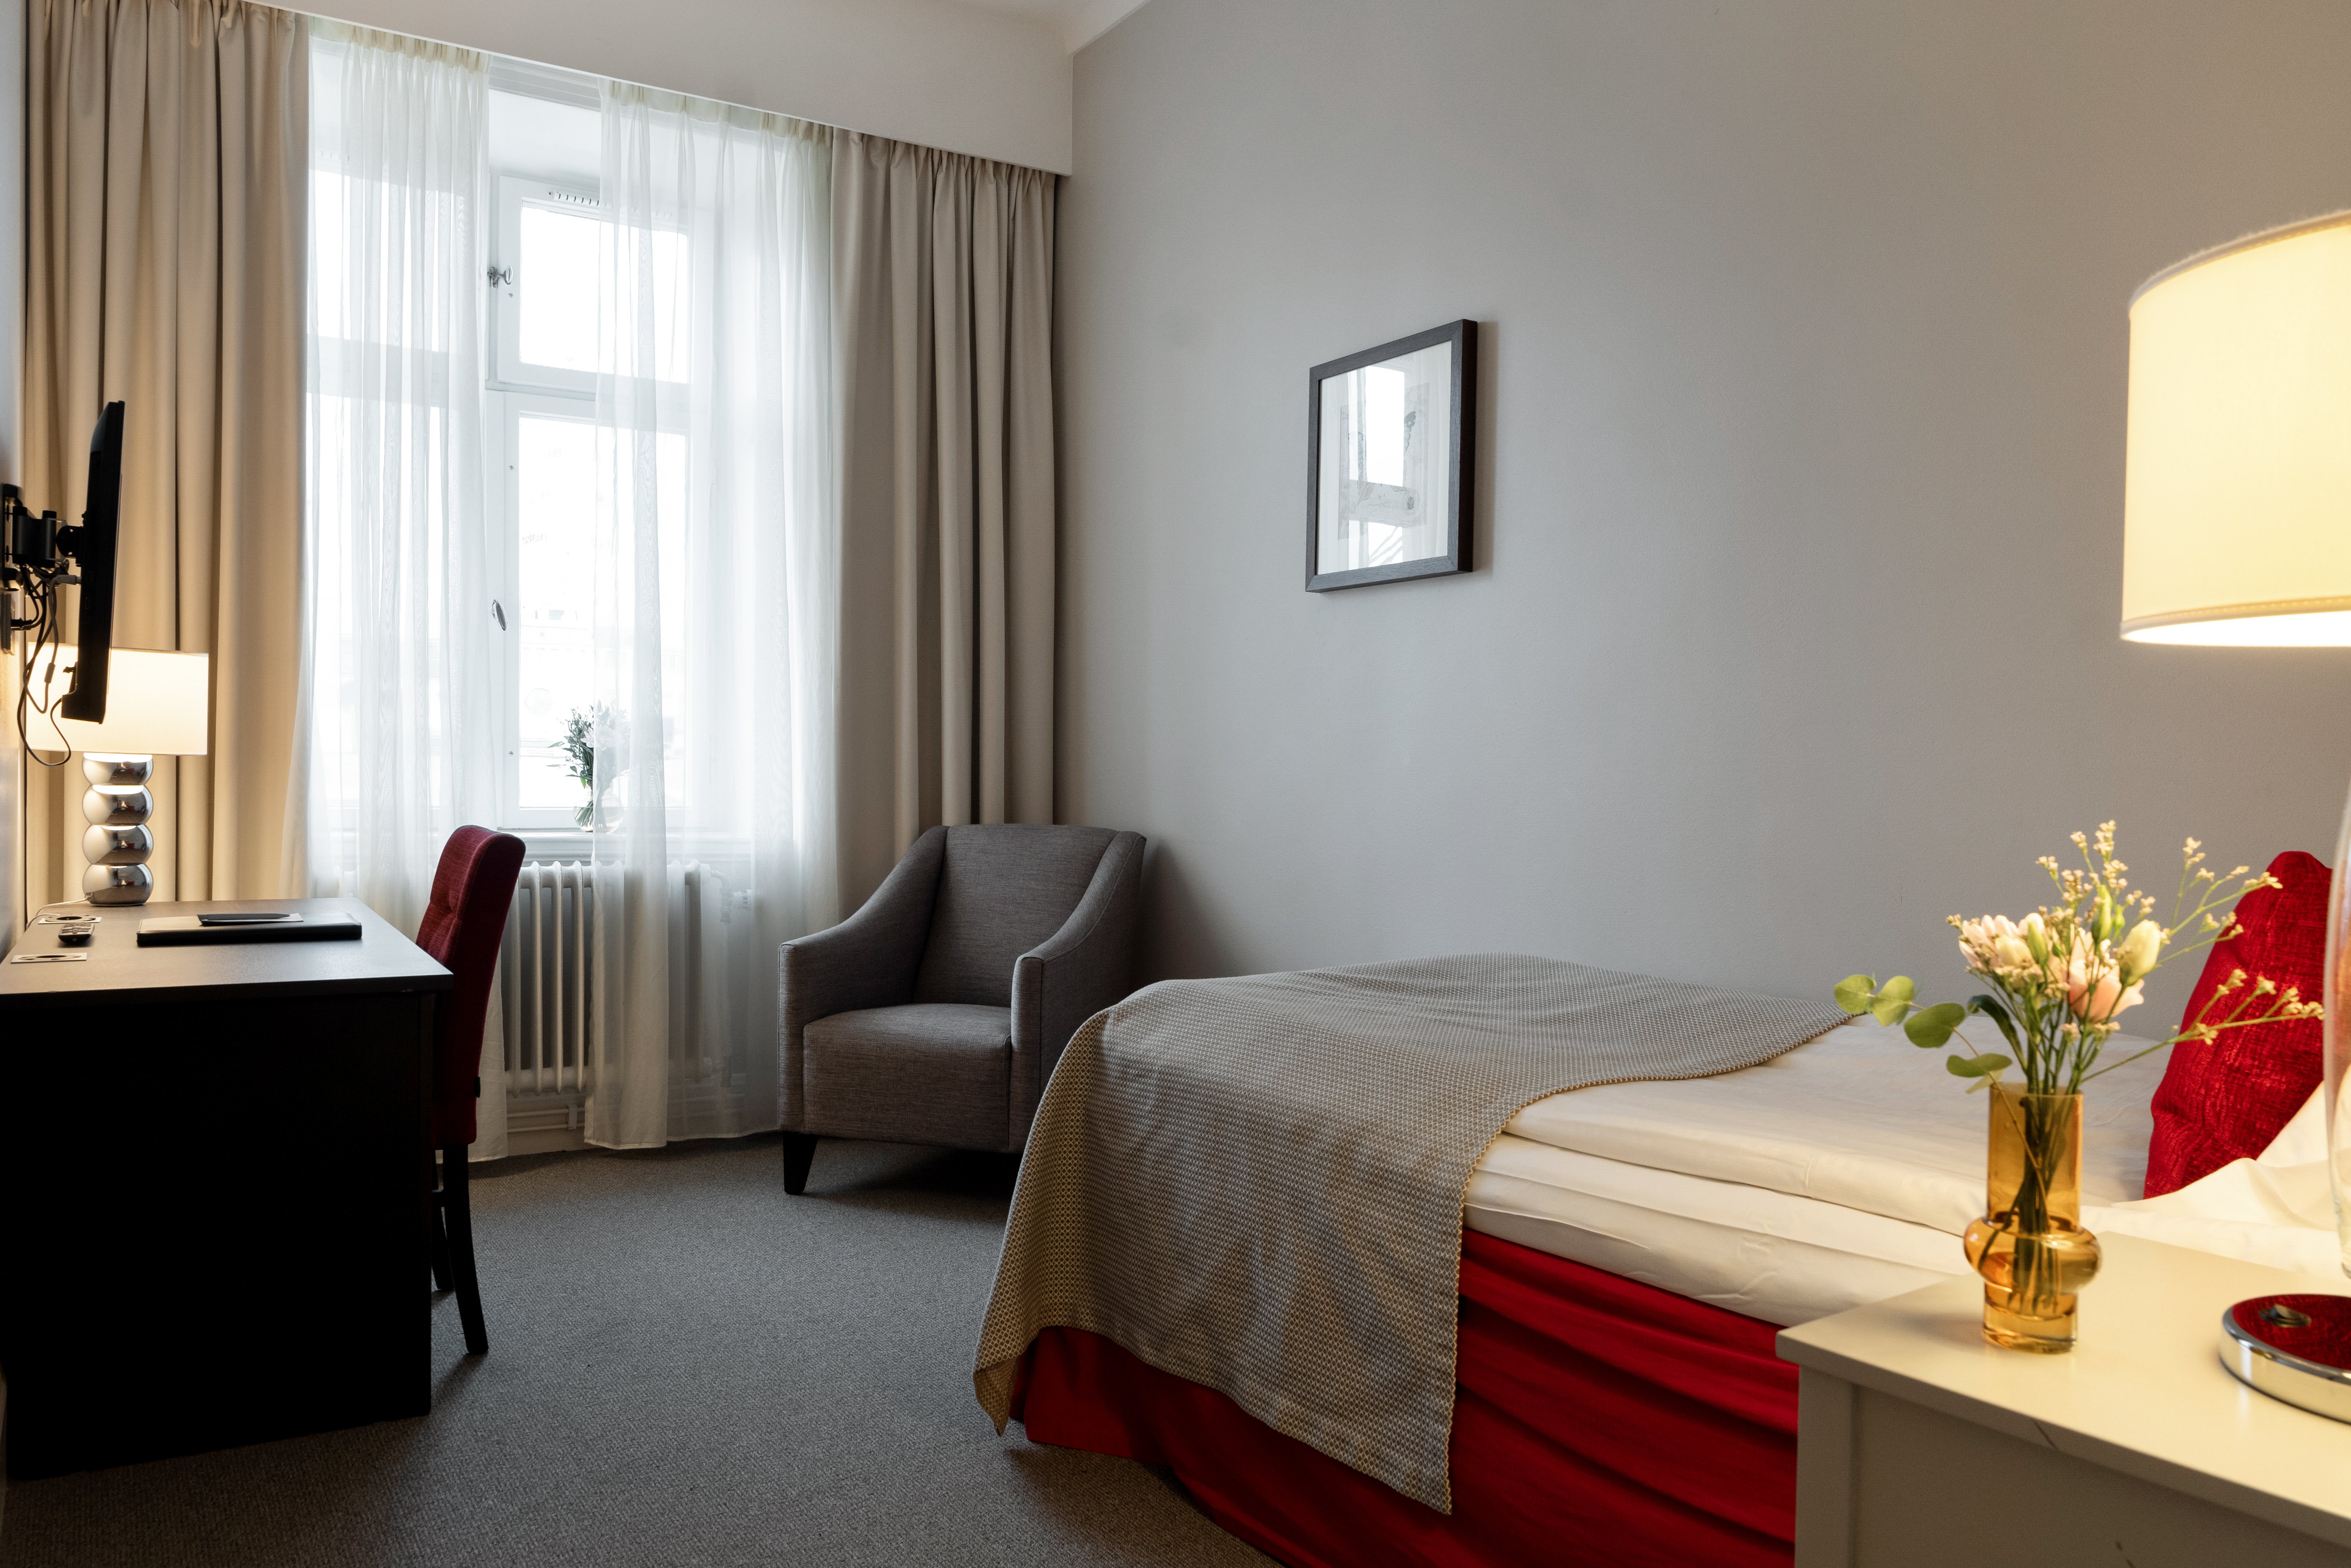 Mysigt hotellrum med enkelsäng, röd sänggavel, nattduksbord och spegel